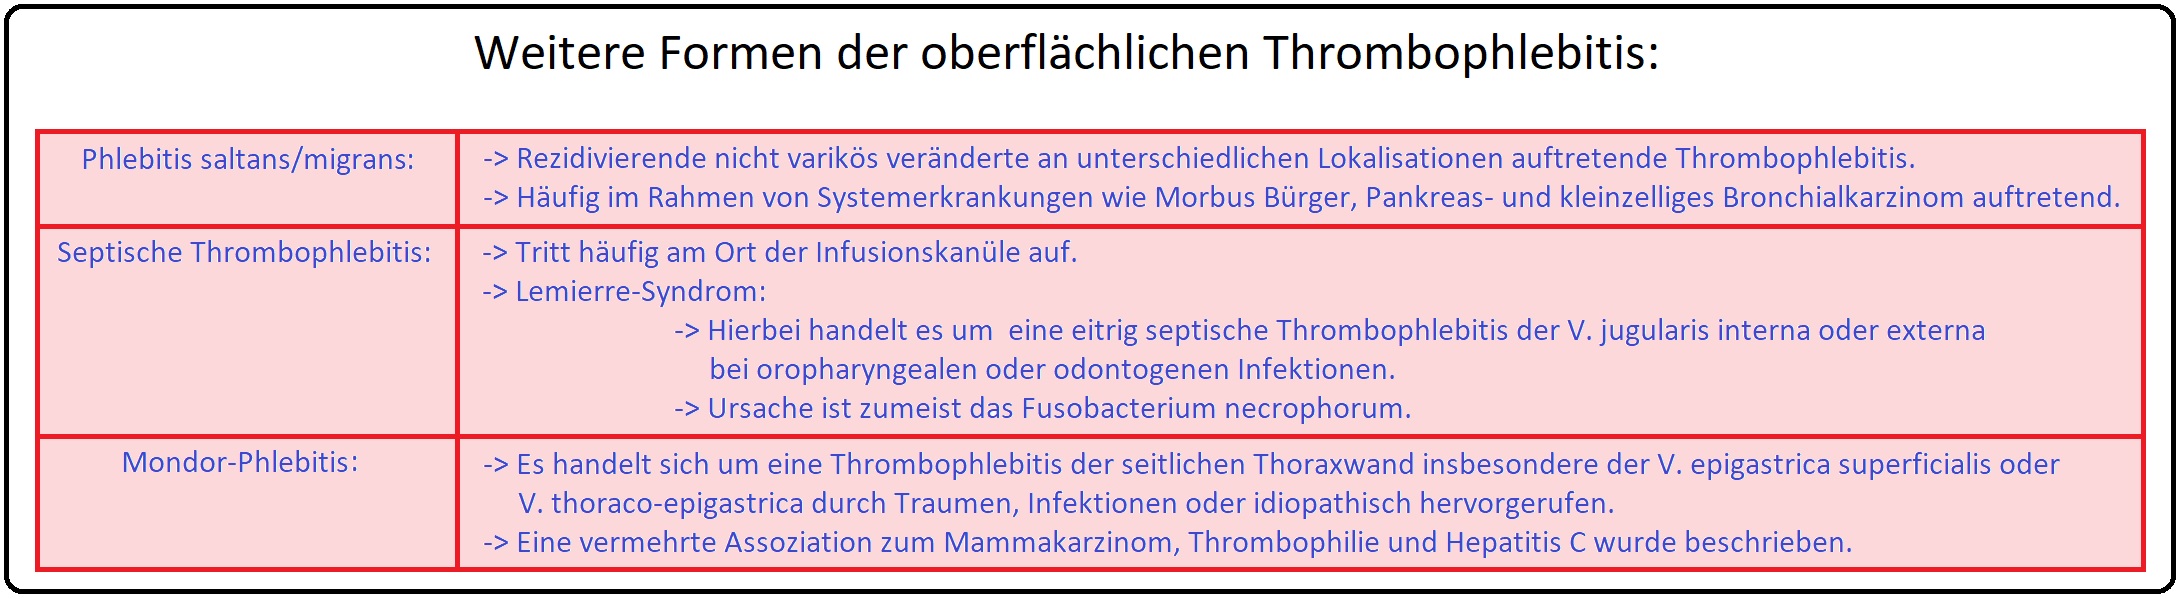 735 Weitere Formen der oberflächlichen Thrombophlebitis